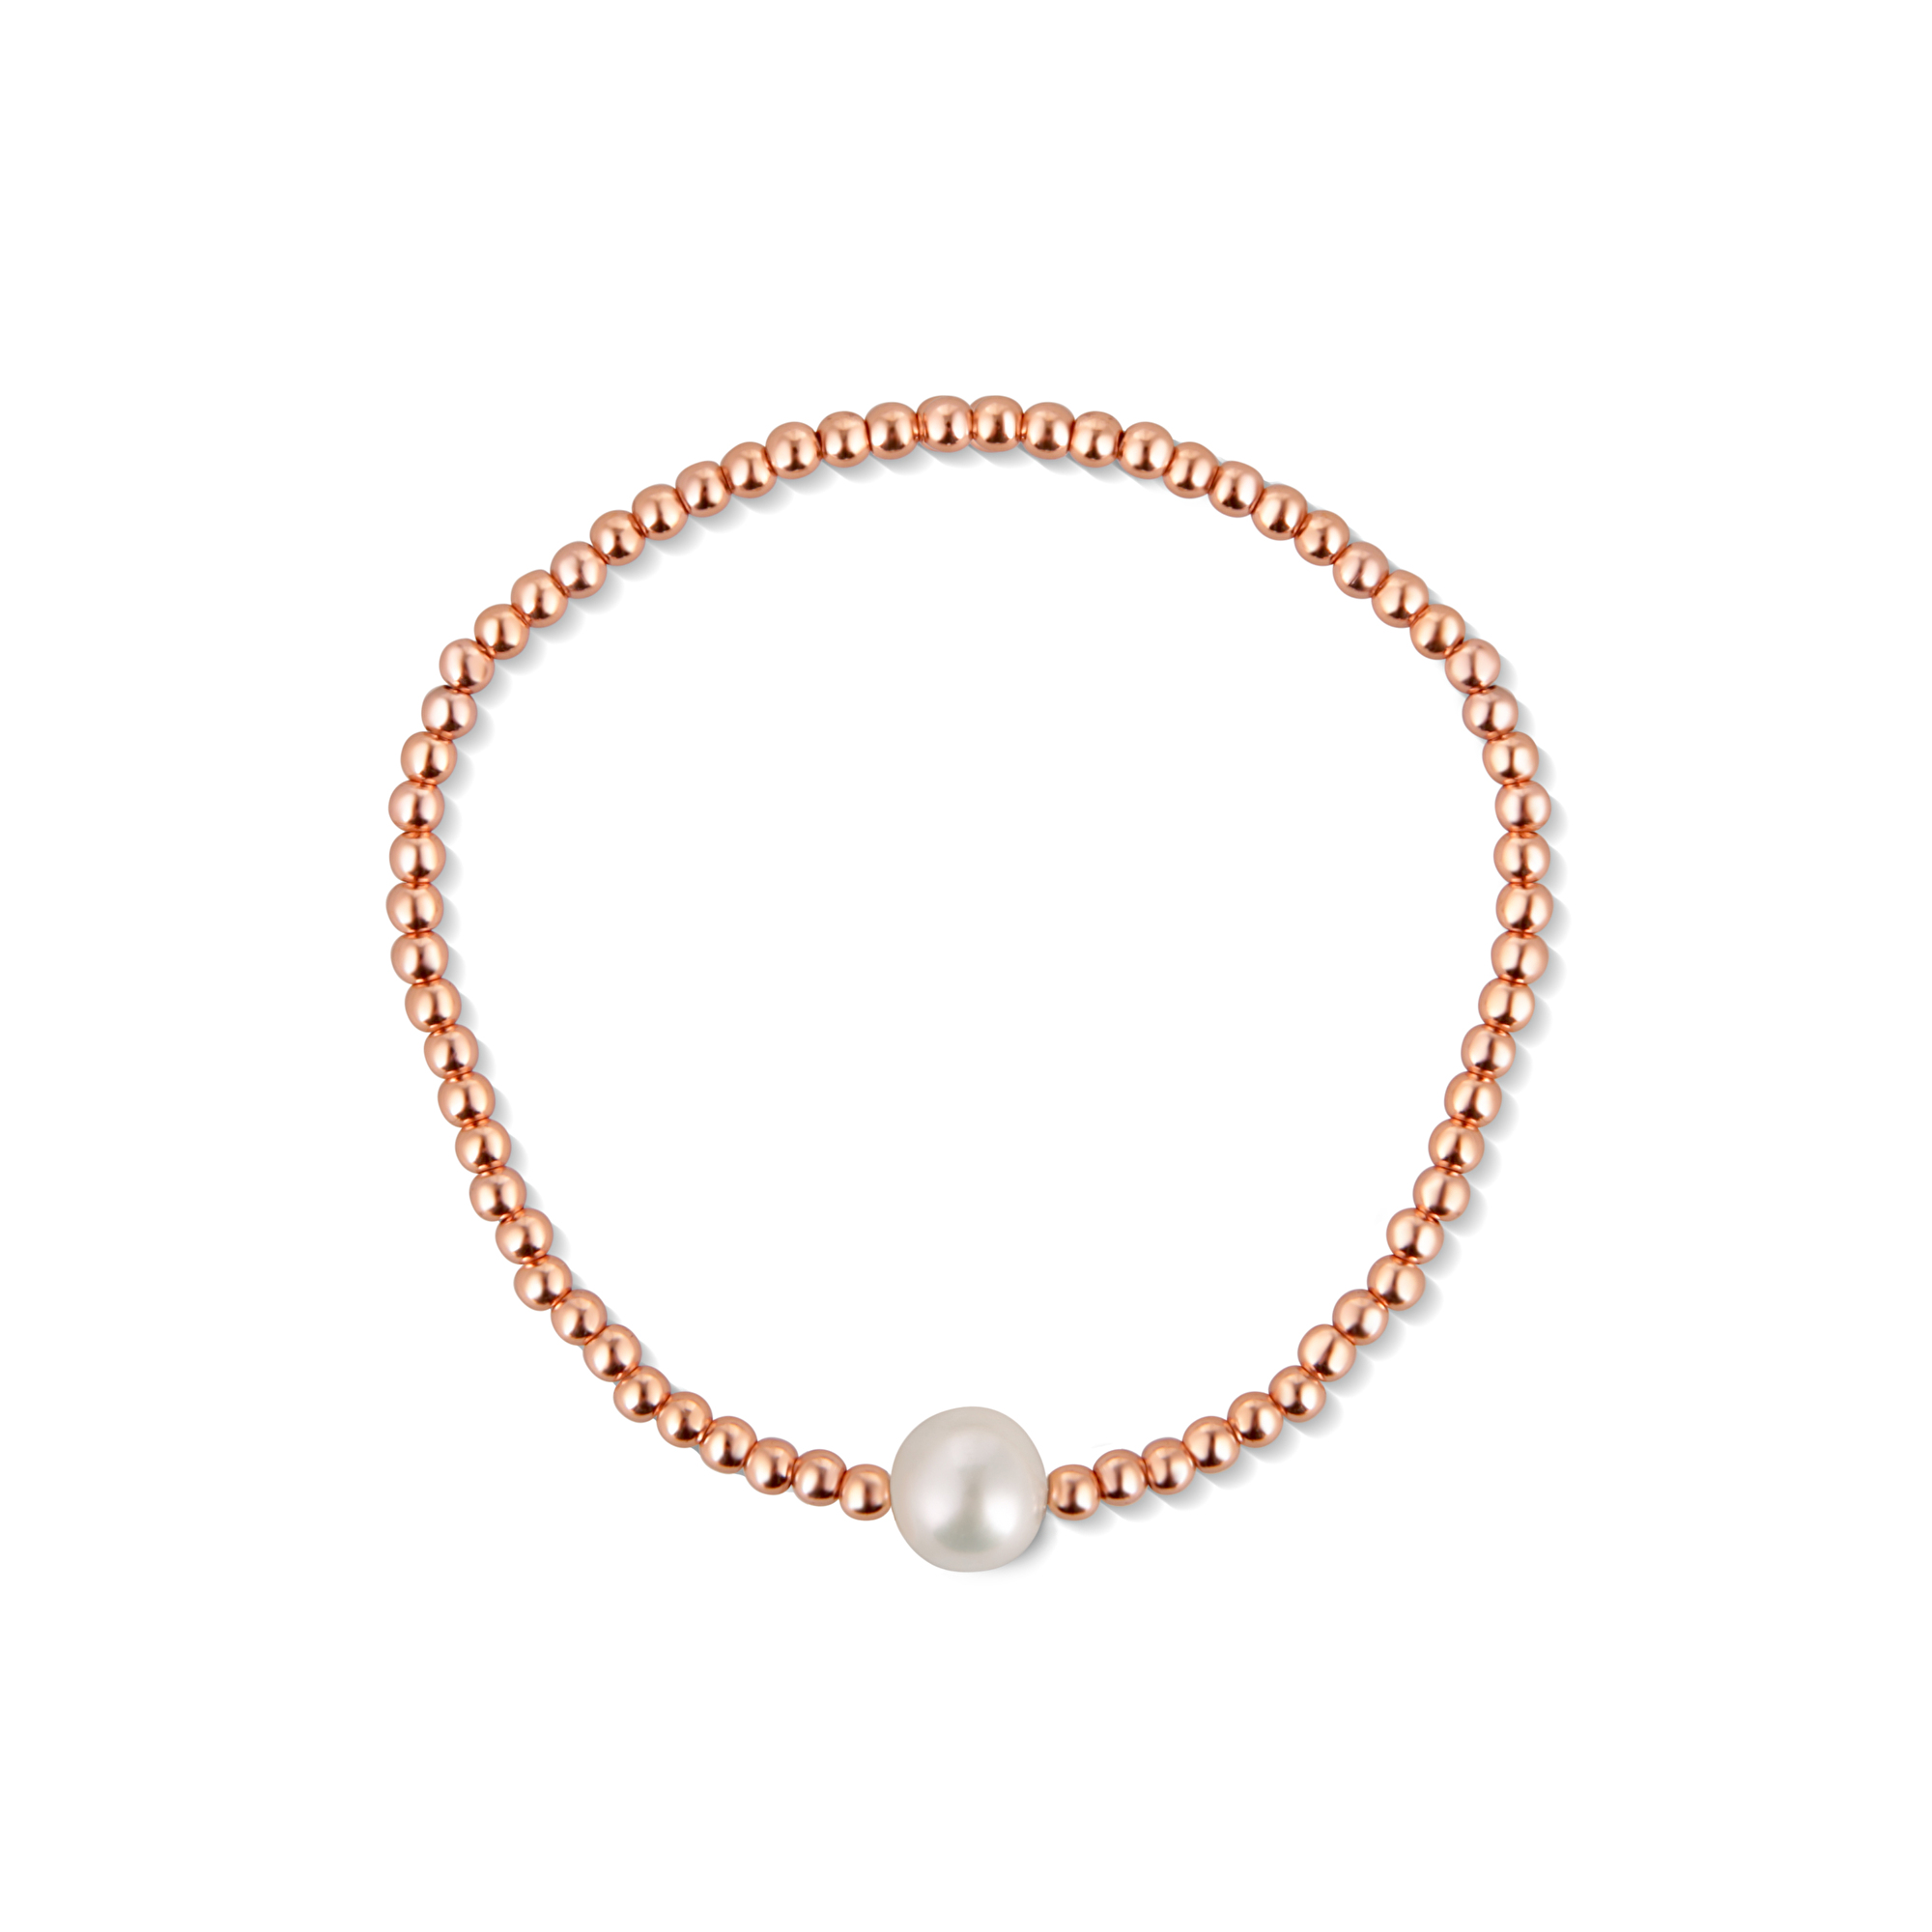 JwL Luxury Pearls Bronzový korálkový náramek s pravou sladkovodní perlou JL0715